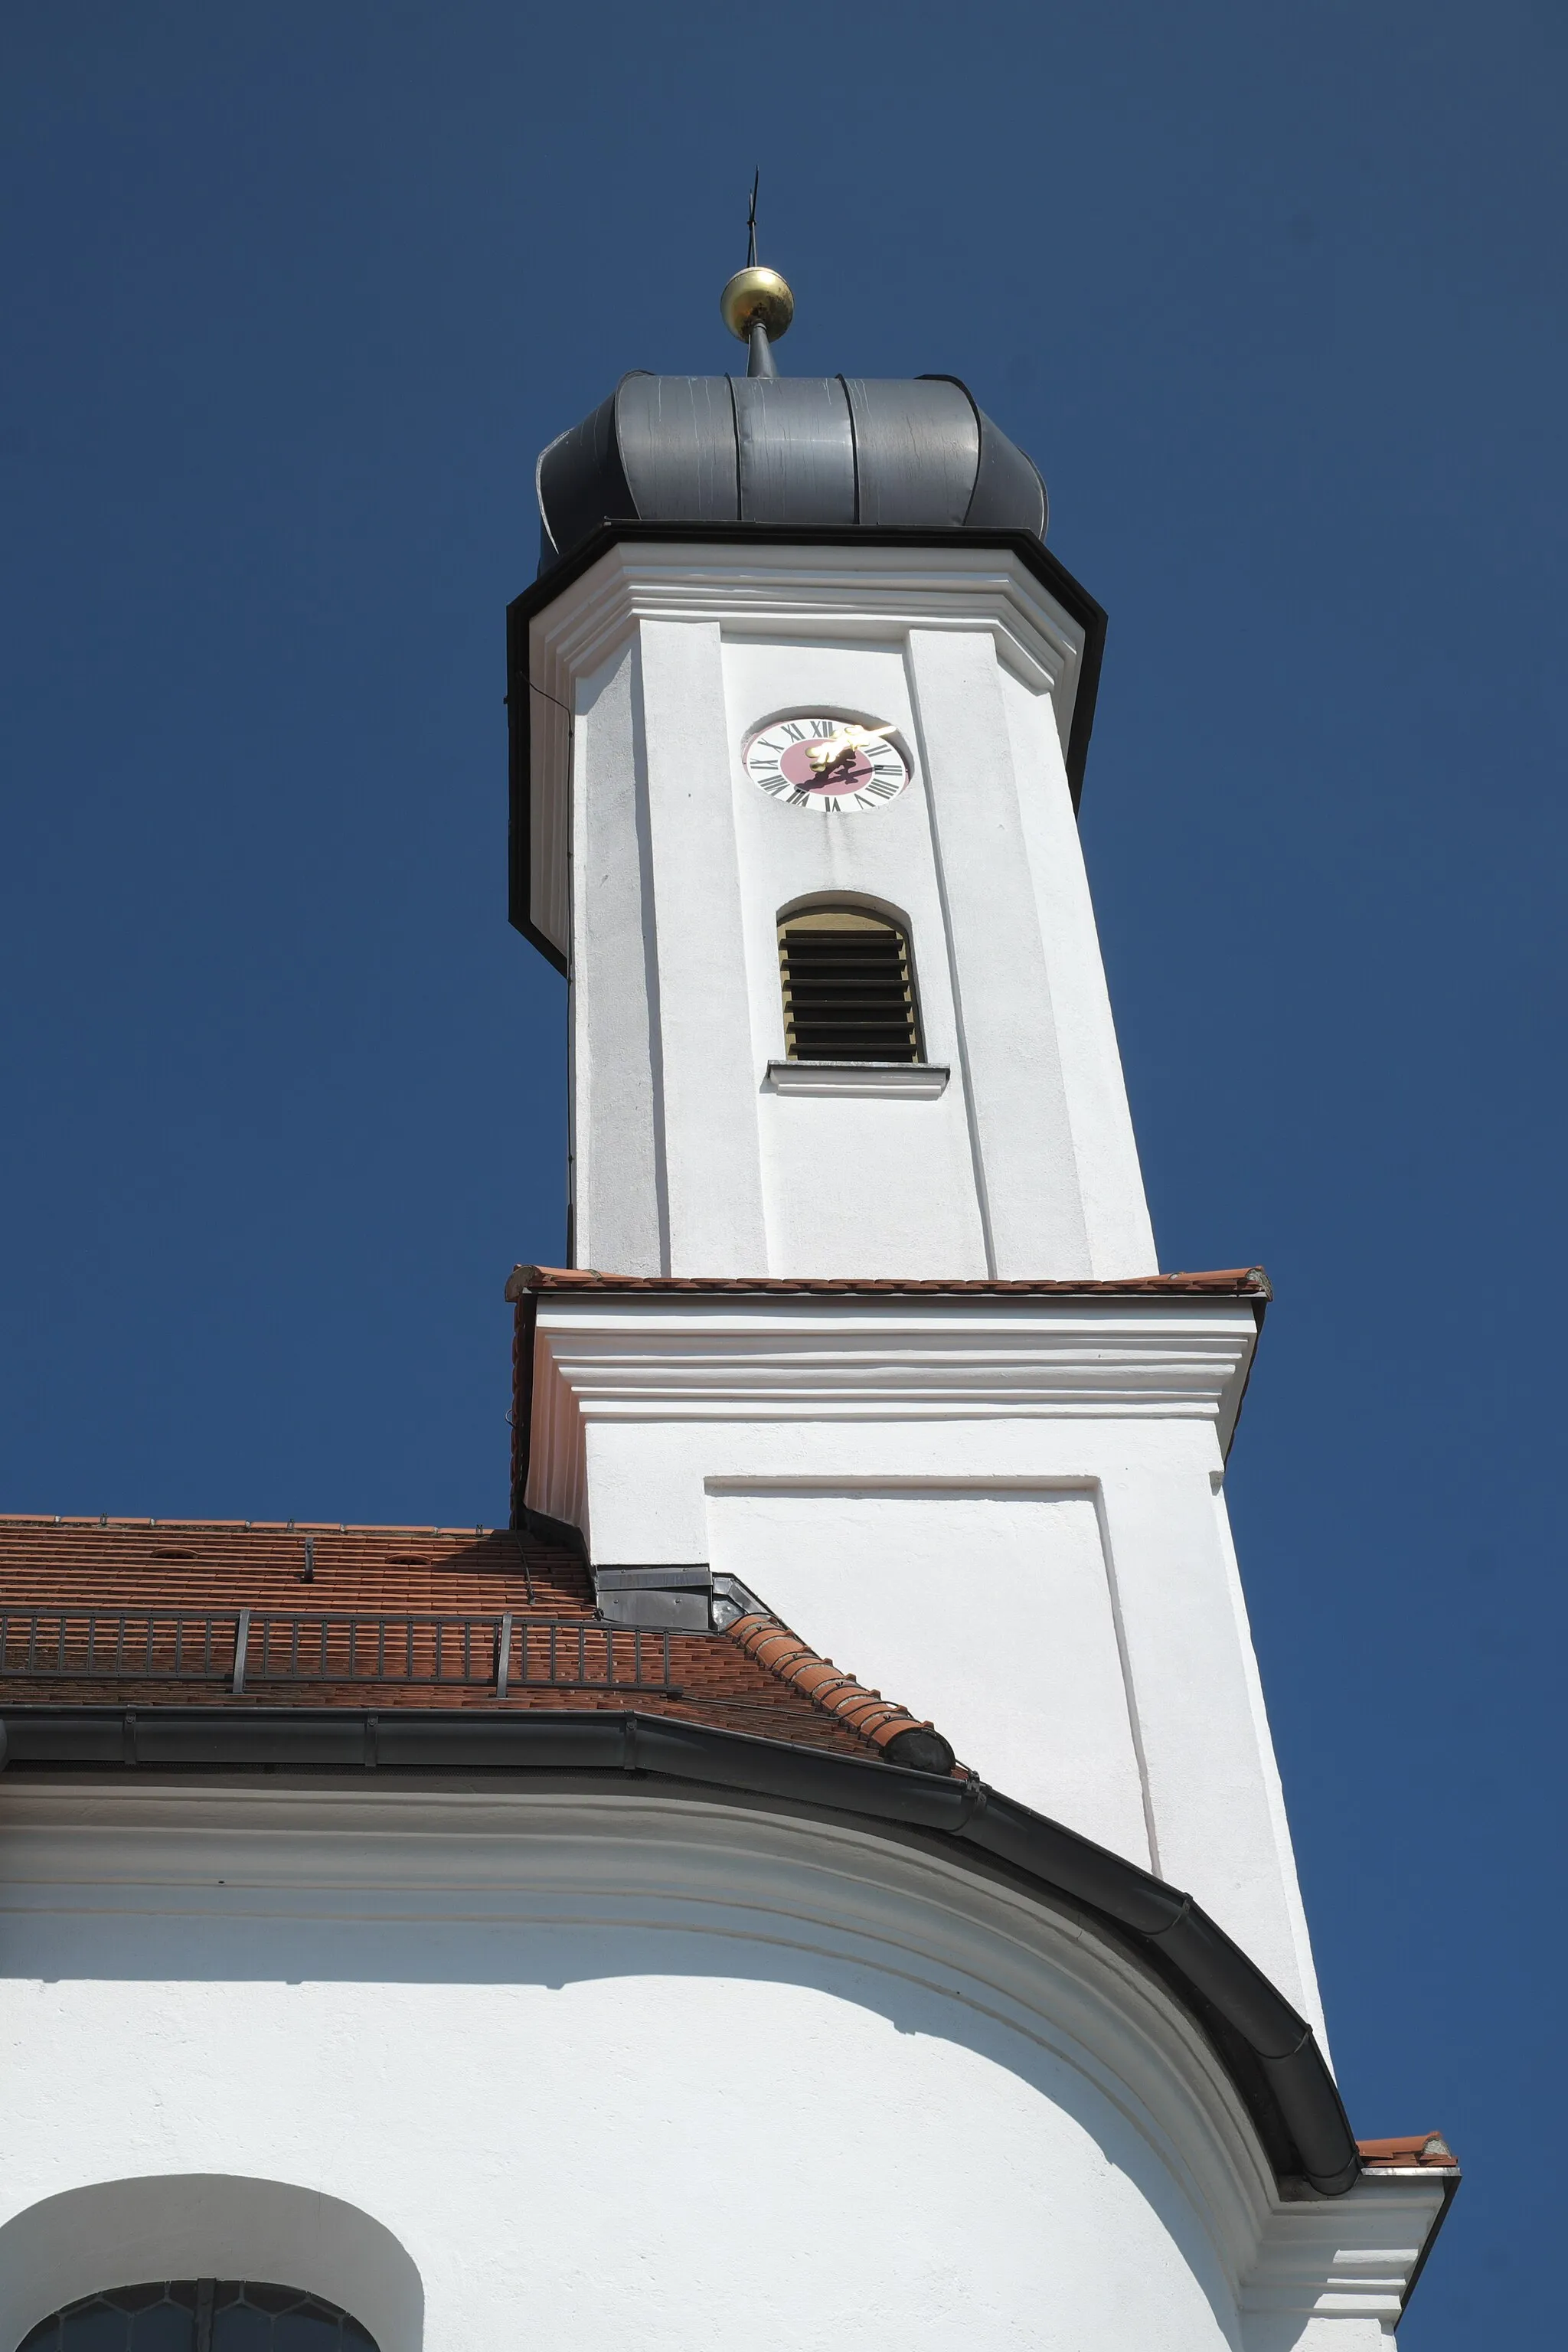 Photo showing: Katholische Pfarrkirche St. Gregor der Große in Zahling (Obergriesbach) im schwäbischen Landkreis Aichach-Friedberg (Bayern/Deutschland), Turm mit Zwiebelhaube